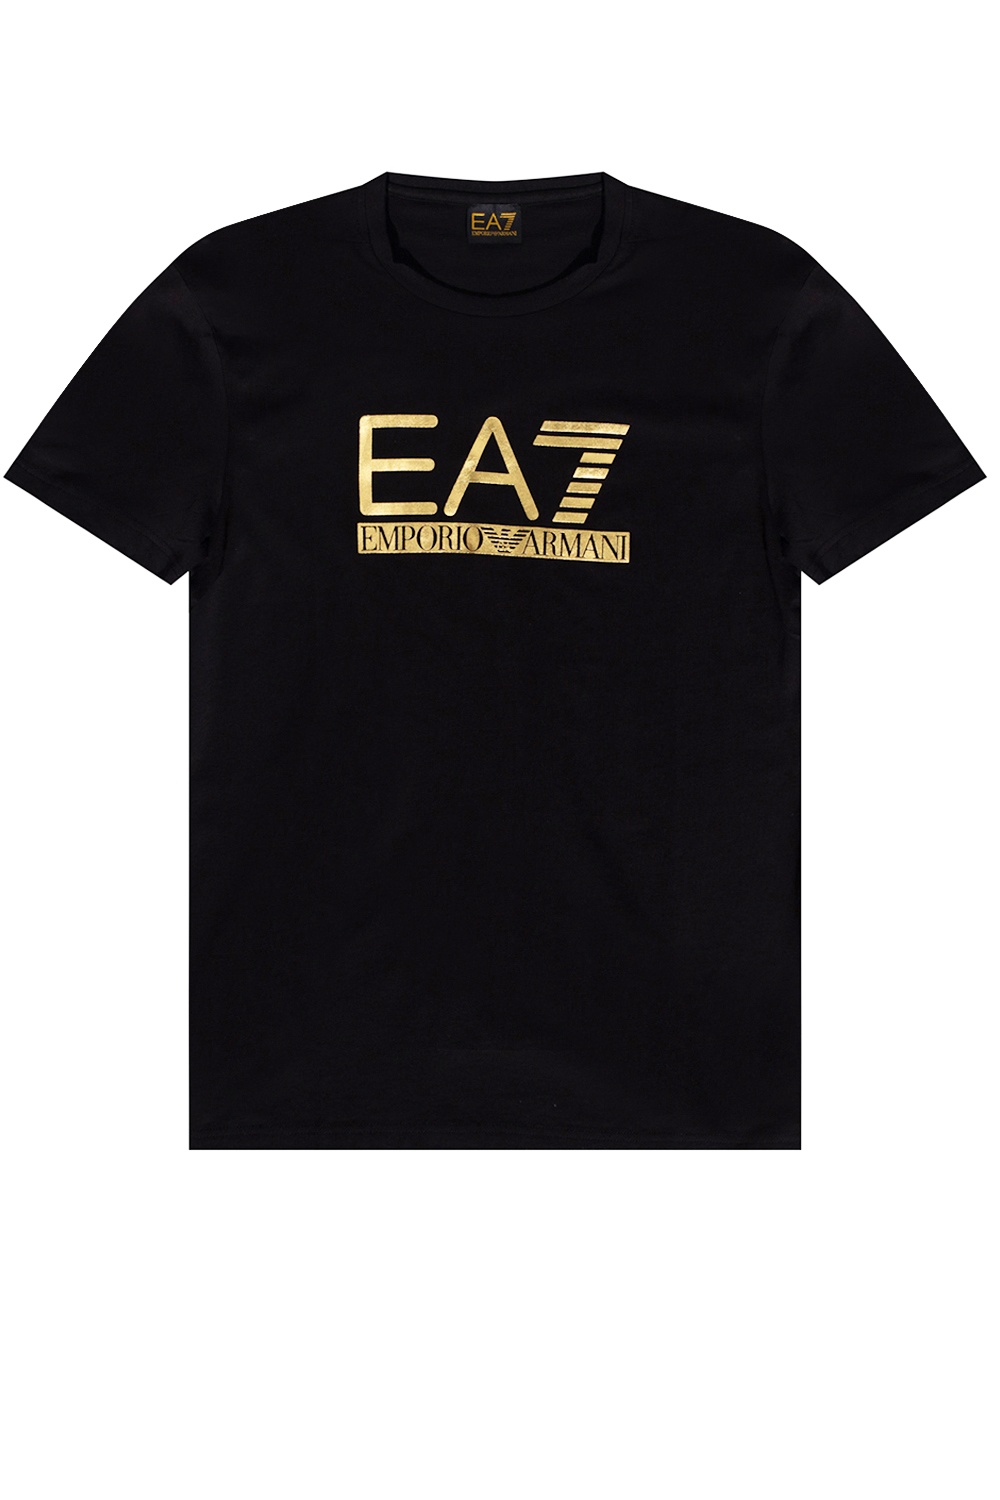 EA7 Emporio with logo | Clothing |